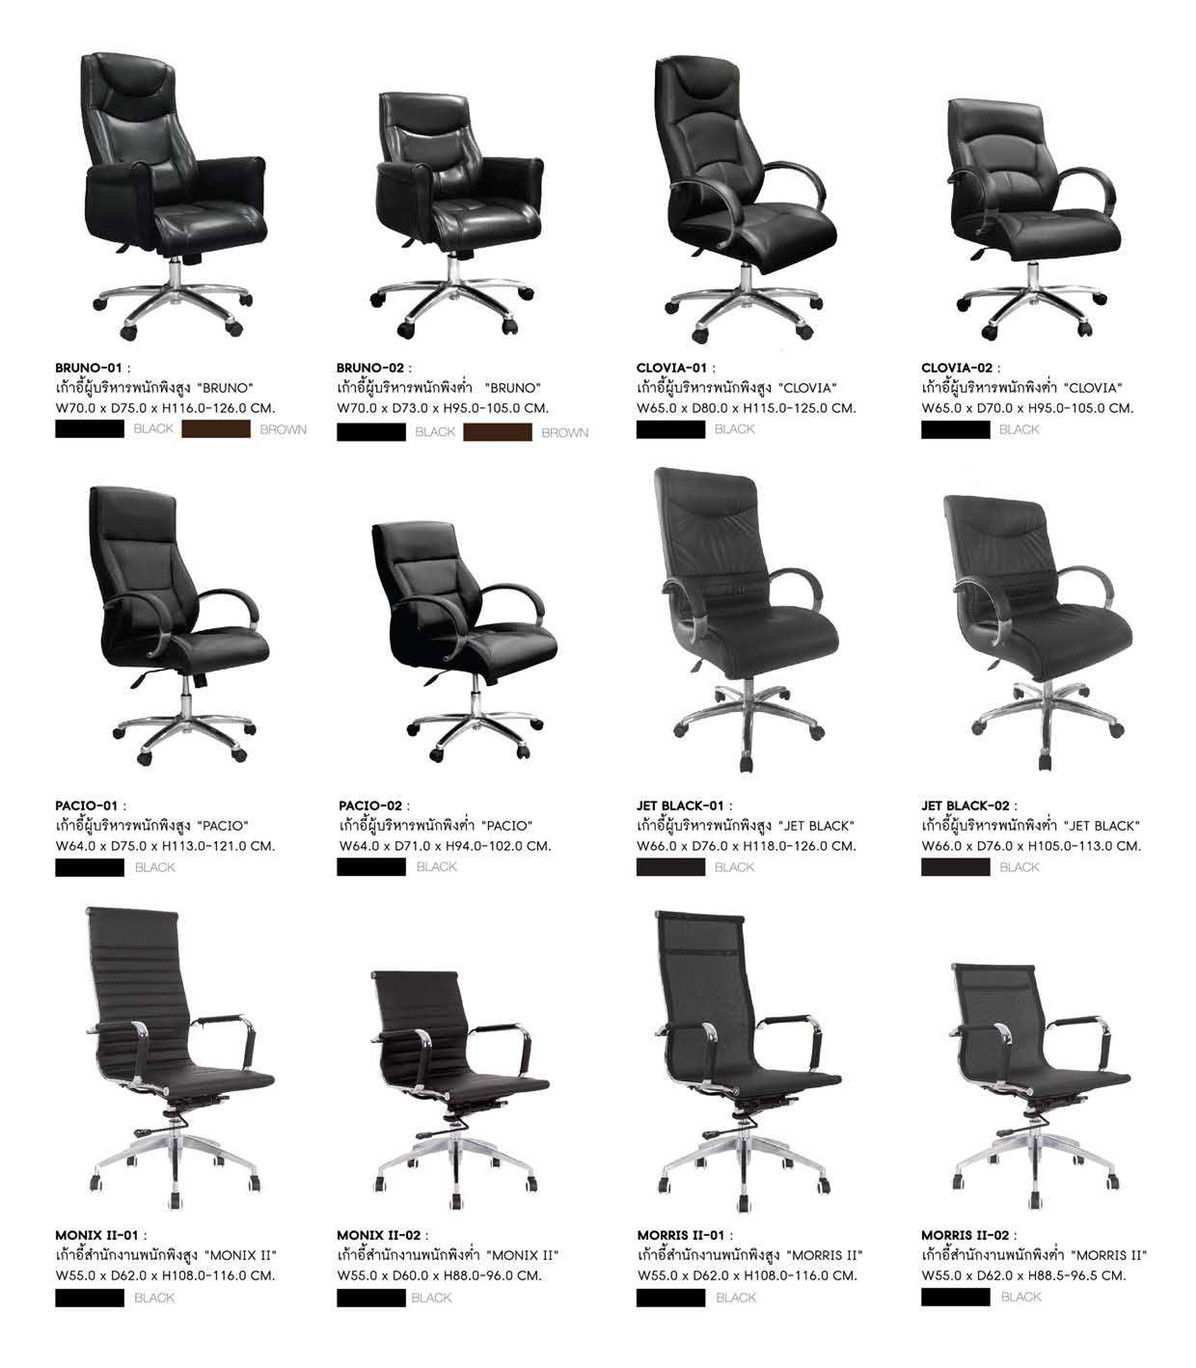 45049::BRUNO-01::เก้าอี้ผู้บริหาร BRUNO-01 ขนาด ก720xล750xส1130-1210 มม. มี2สี (สีดำ,สีน้ำตาล)  เก้าอี้ผู้บริหาร SURE